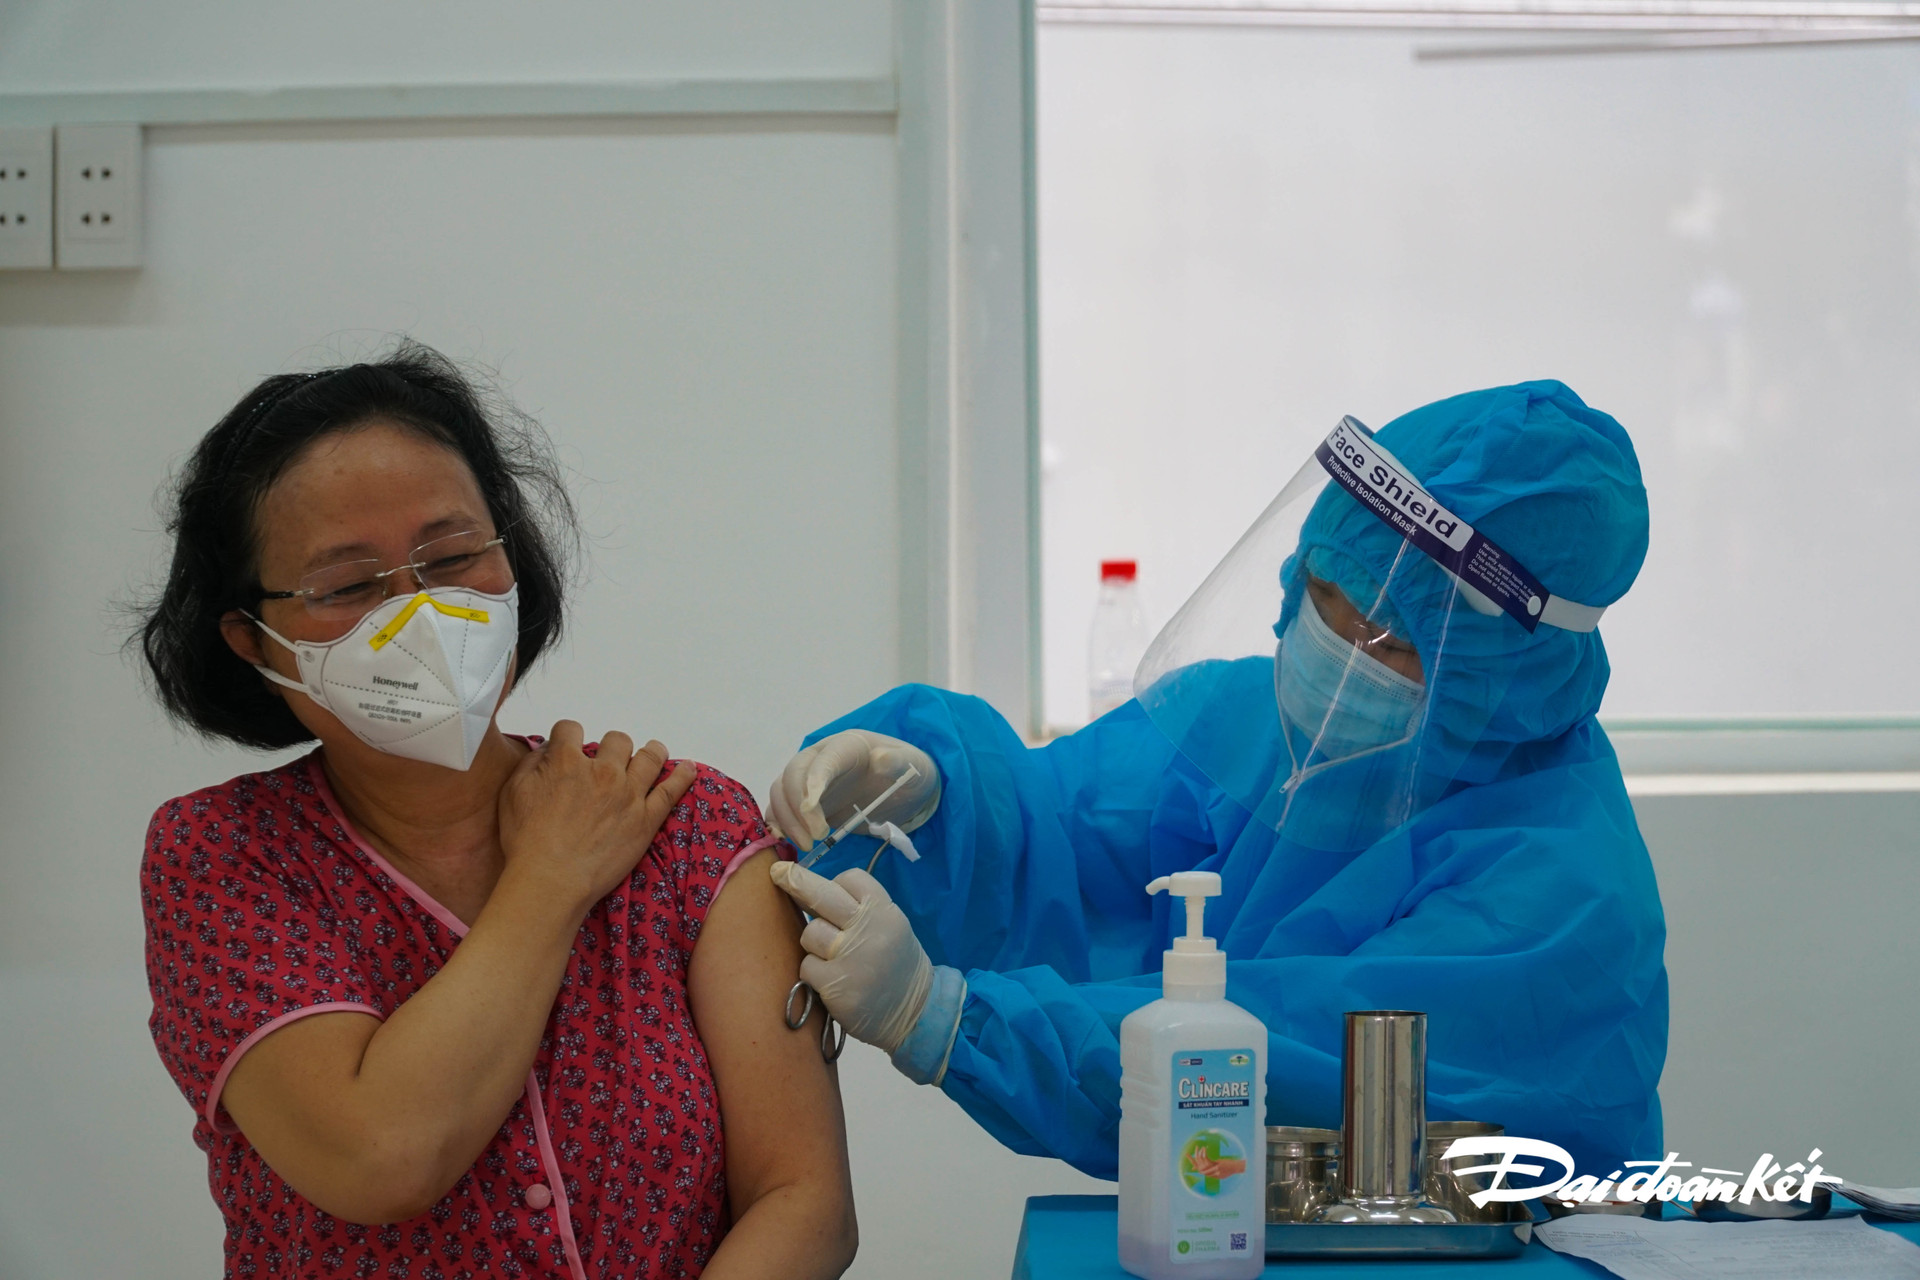 Trước đó, chiều 5/8, UBND tỉnh Bà Rịa - Vũng Tàu đã ban hành Quyết định thành lập Ban chỉ đạo Chiến dịch tiêm chủng vaccine phòng Covid-19 cho người dân.